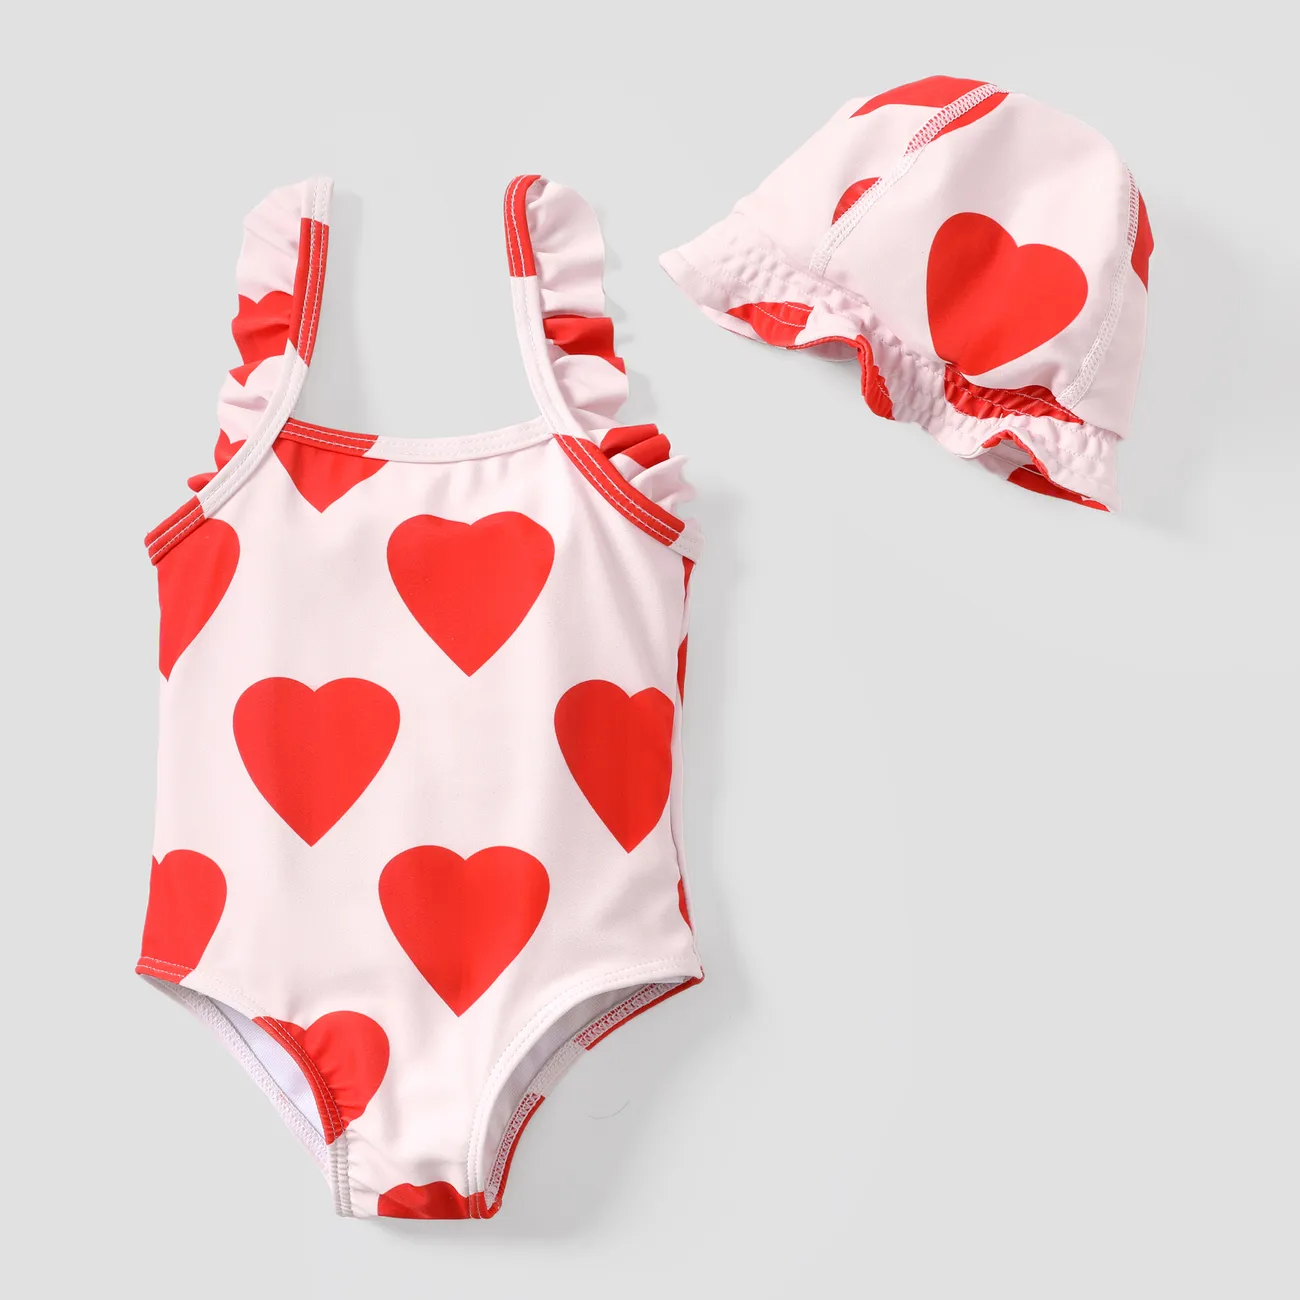 2-teiliges Baby-/Kleinkind-Set mit süßen herzförmigen gerüschten Badeanzügen rot big image 1